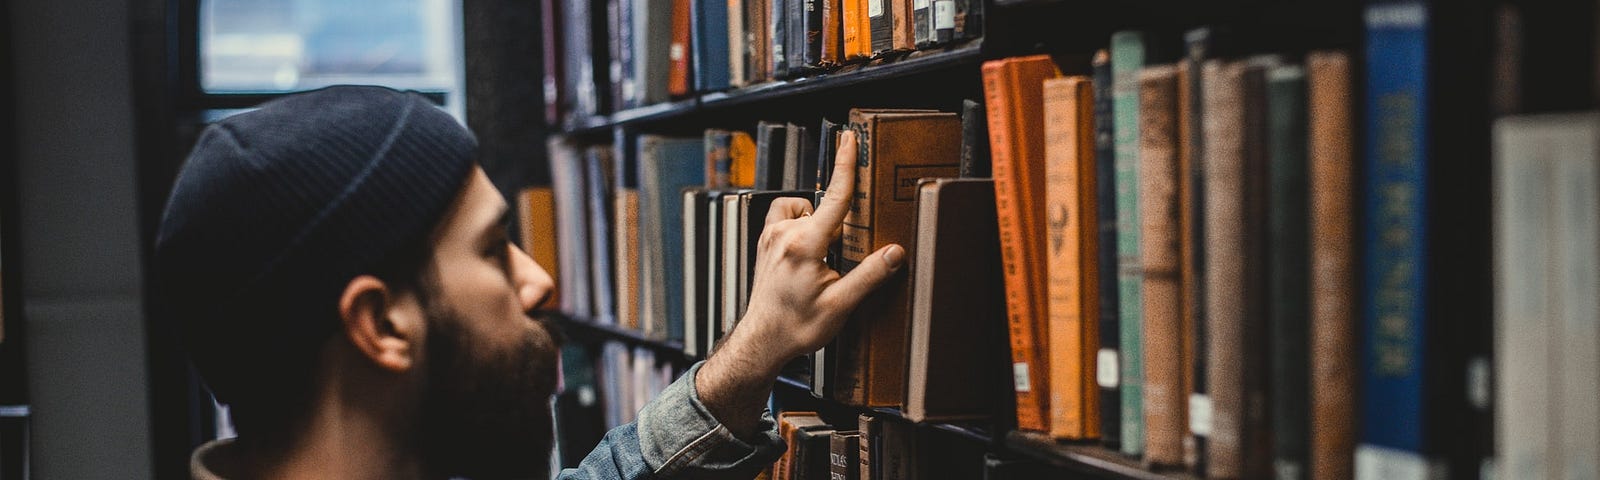 Nesta imagem temos um homem de touca na cabeça de frente a uma estante de biblioteca, estante alta onde tem vários livros, ele está com a mão levantada pegando um livro nessa estante.